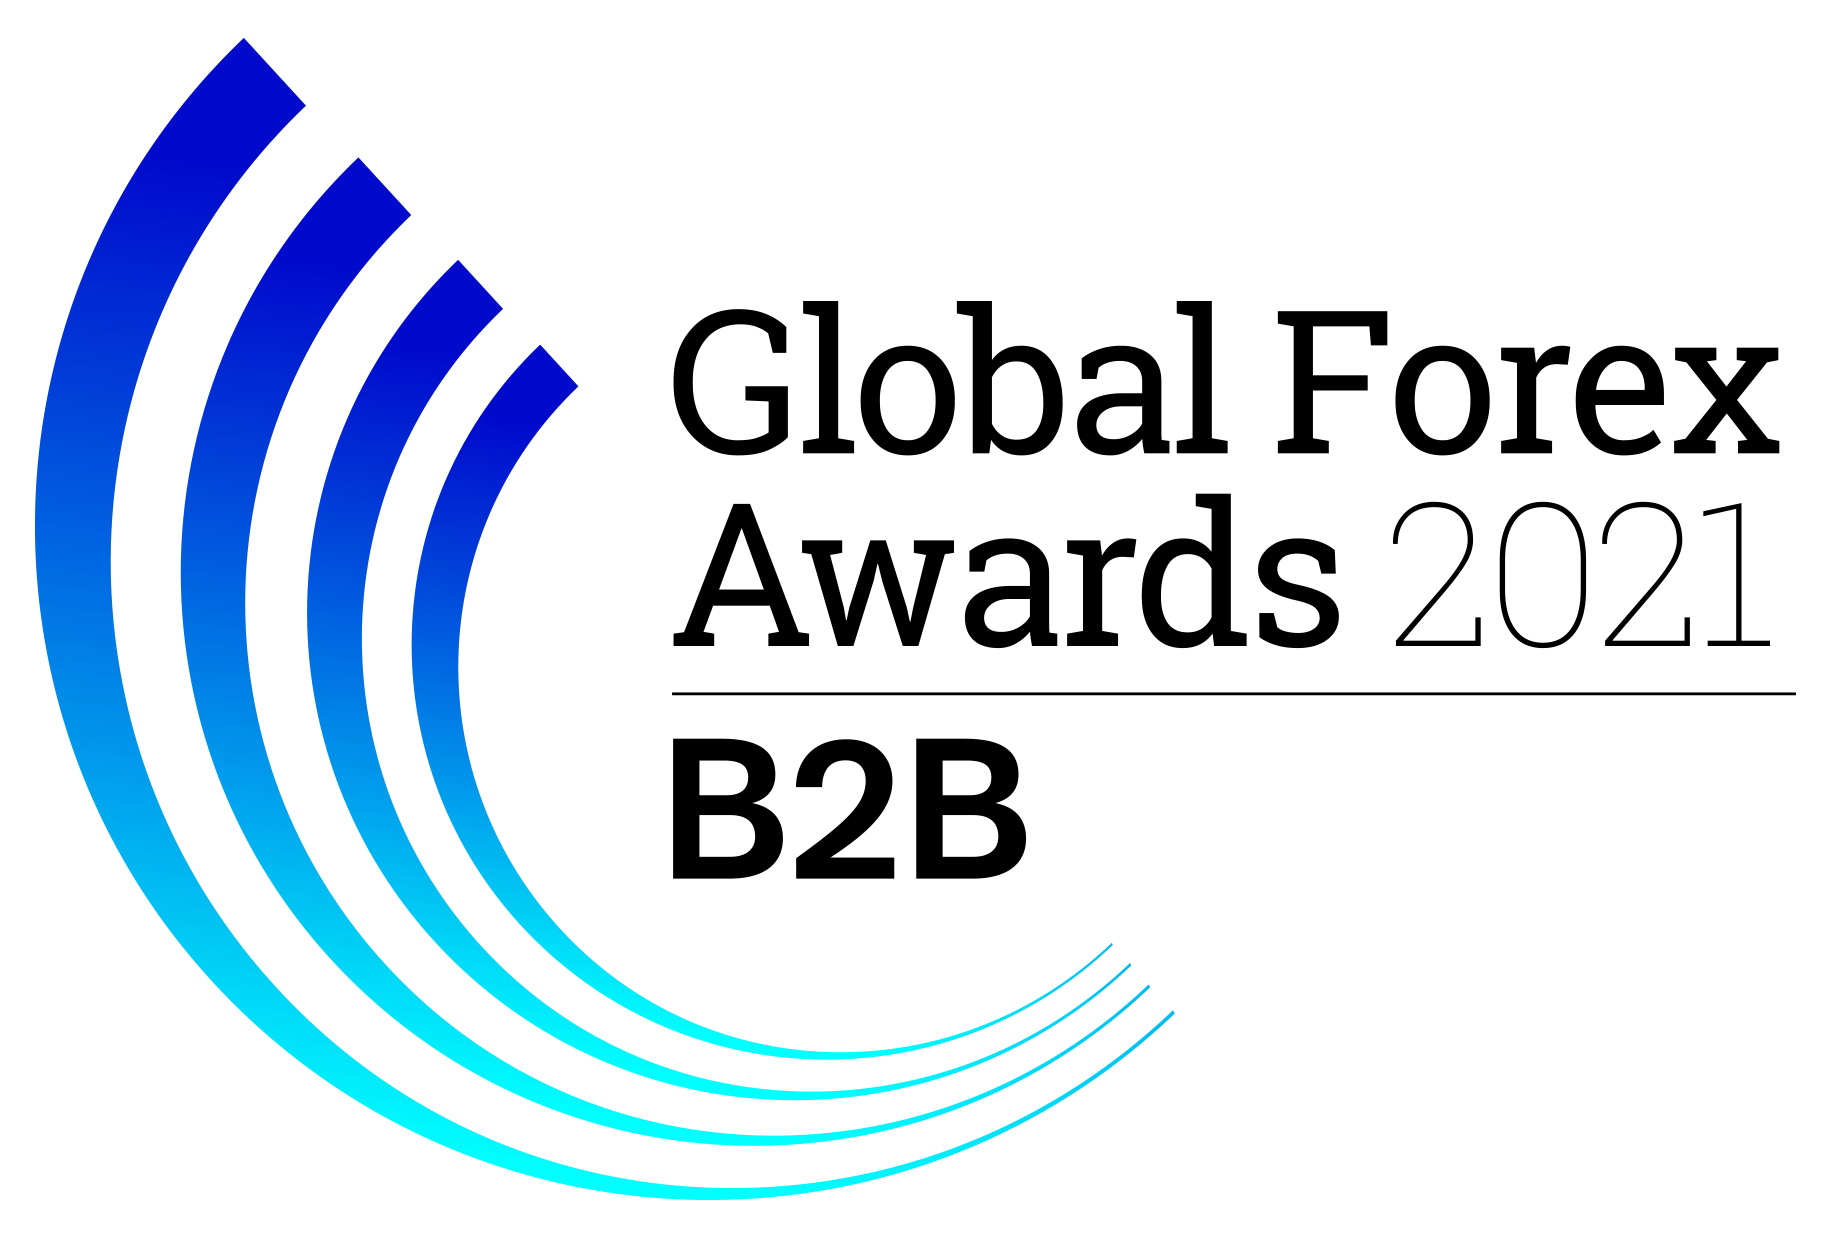 Global Forex Awards 2021 - B2B logo